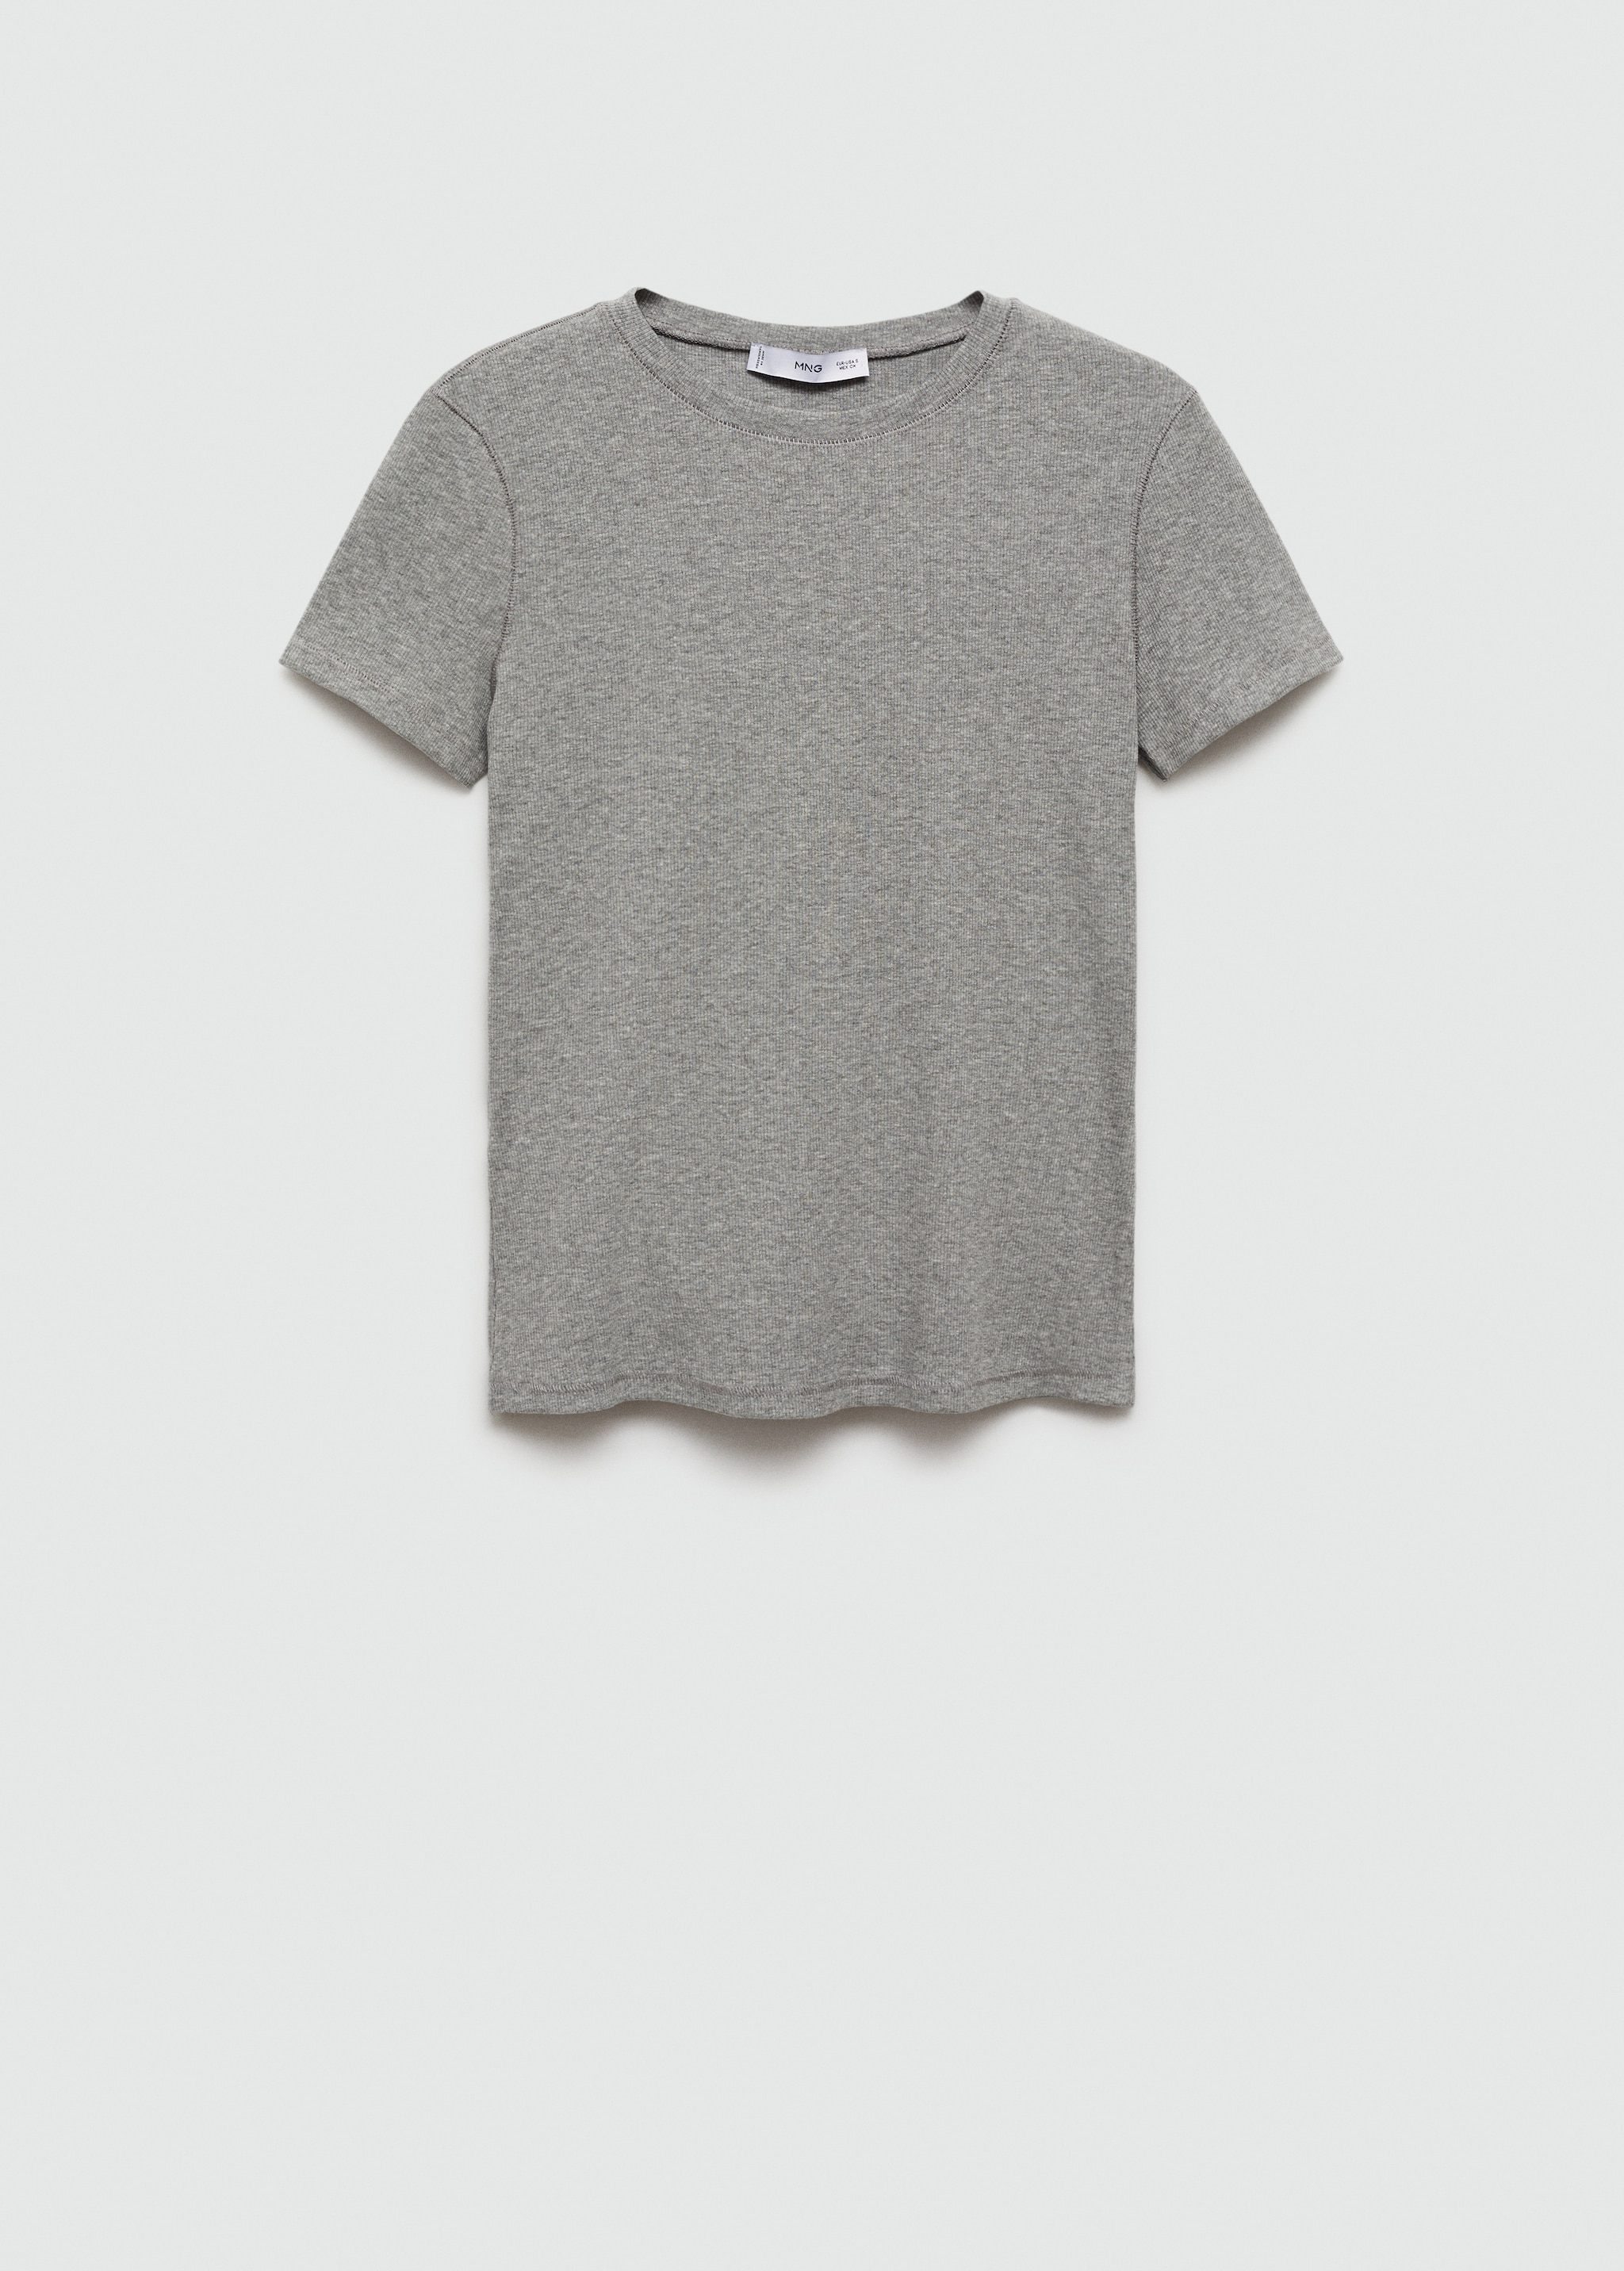 Kısa kollu triko tişört - Modelsiz ürün